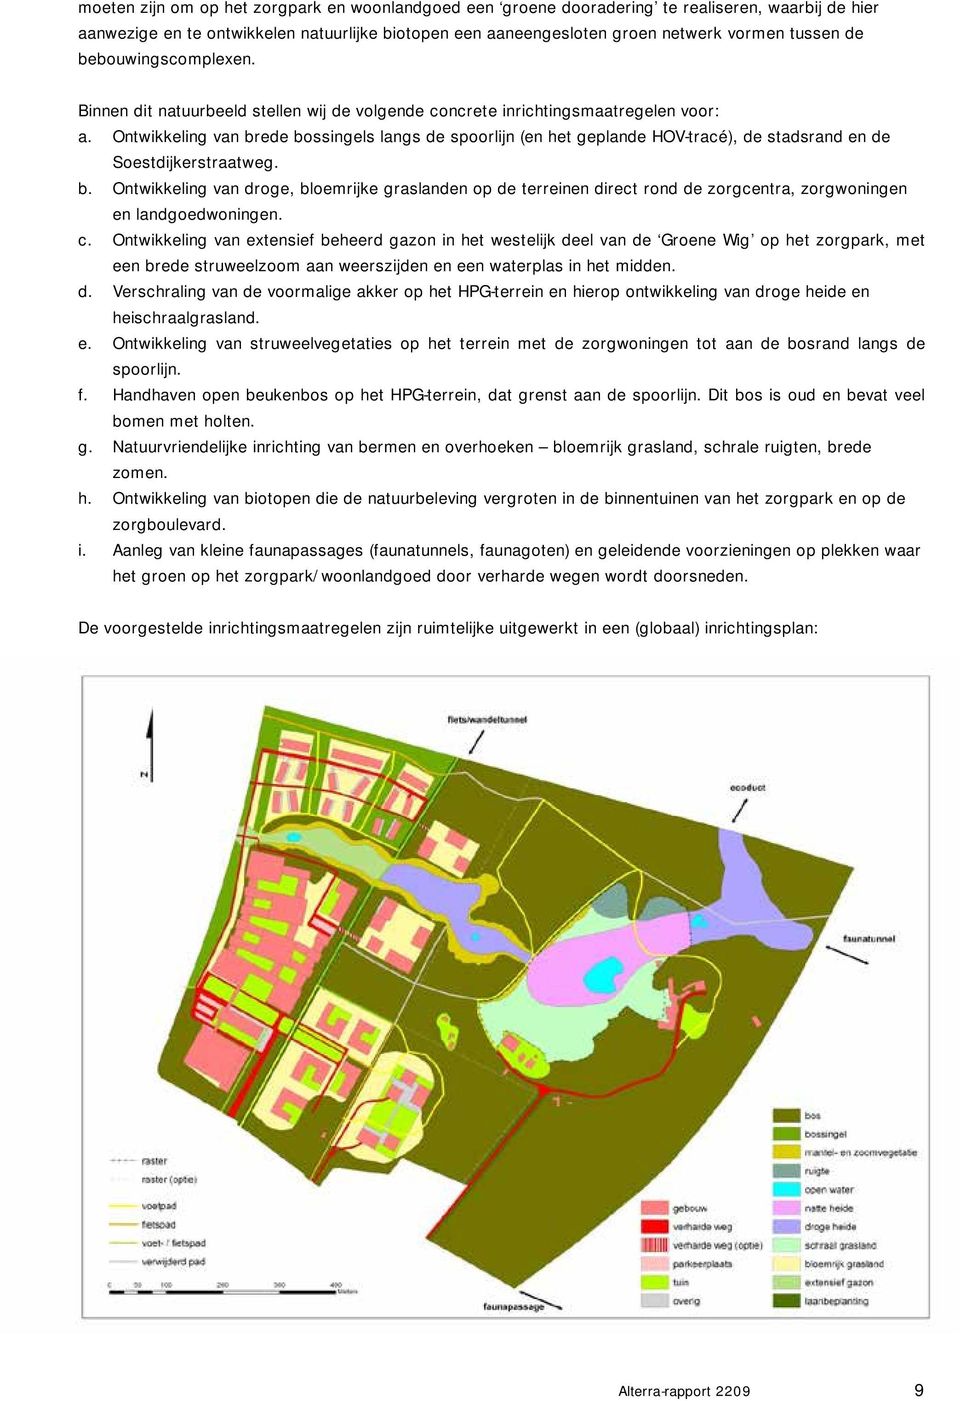 Ontwikkeling van brede bossingels langs de spoorlijn (en het geplande HOV-tracé), de stadsrand en de Soestdijkerstraatweg. b. Ontwikkeling van droge, bloemrijke graslanden op de terreinen direct rond de zorgcentra, zorgwoningen en landgoedwoningen.